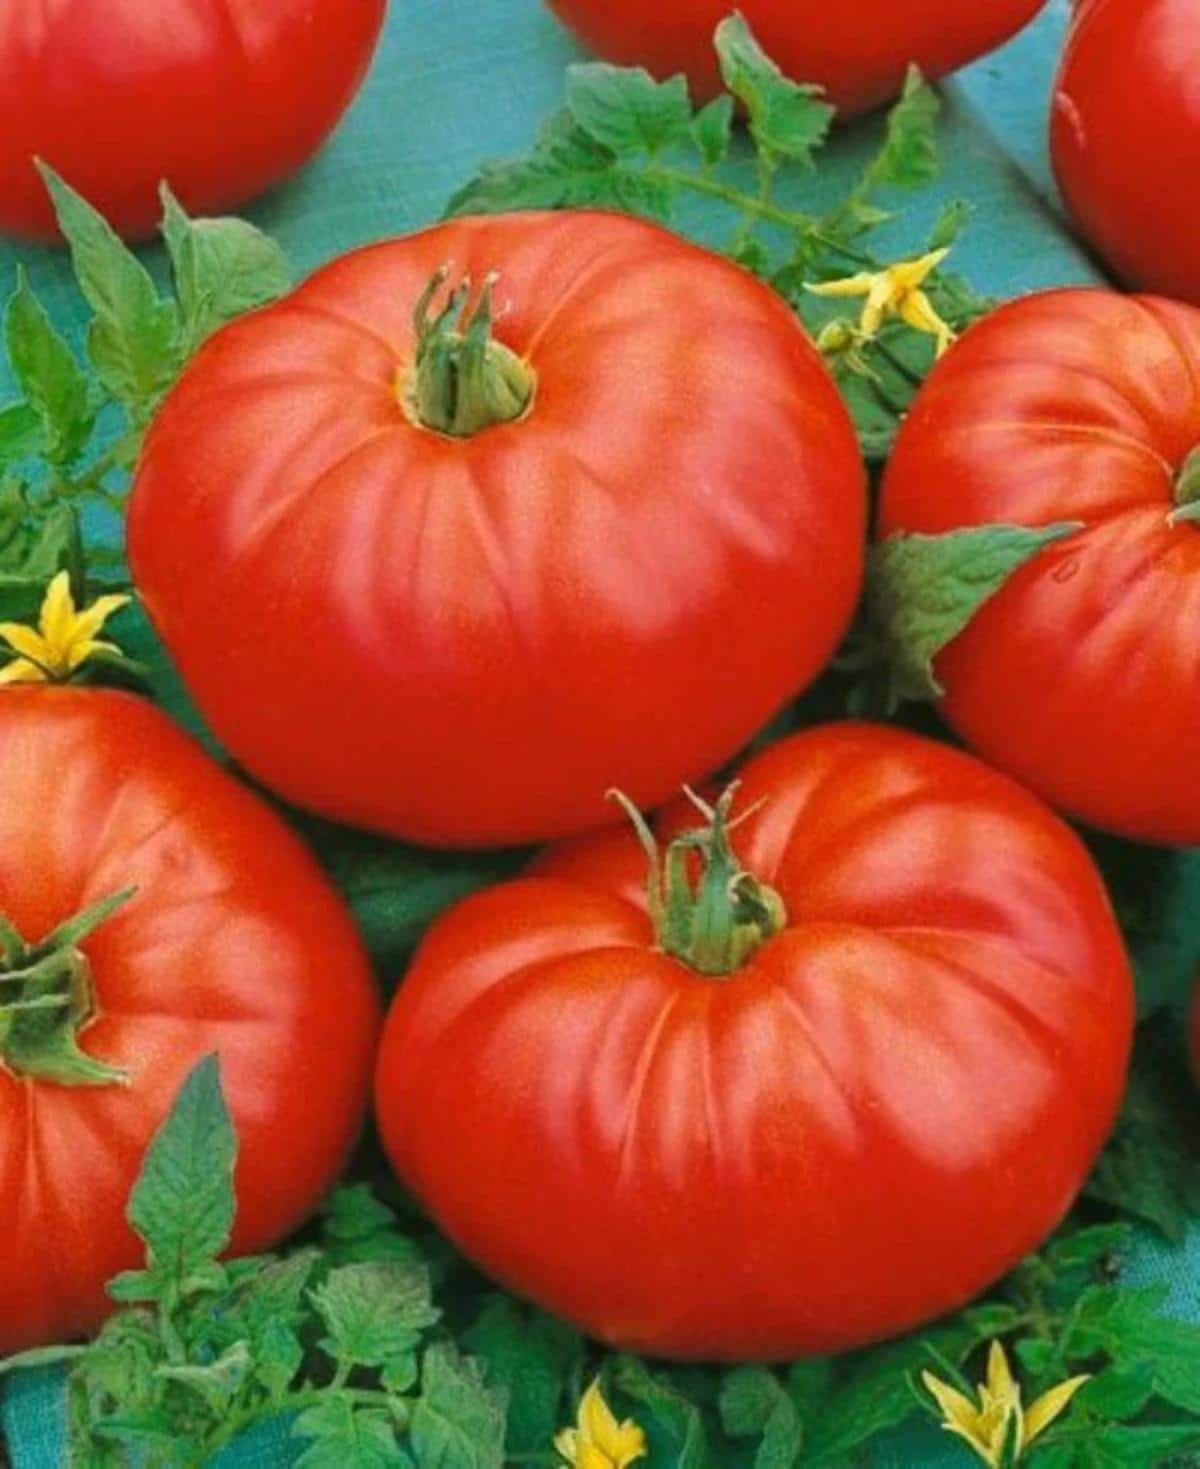 Beefmaster tomato variety